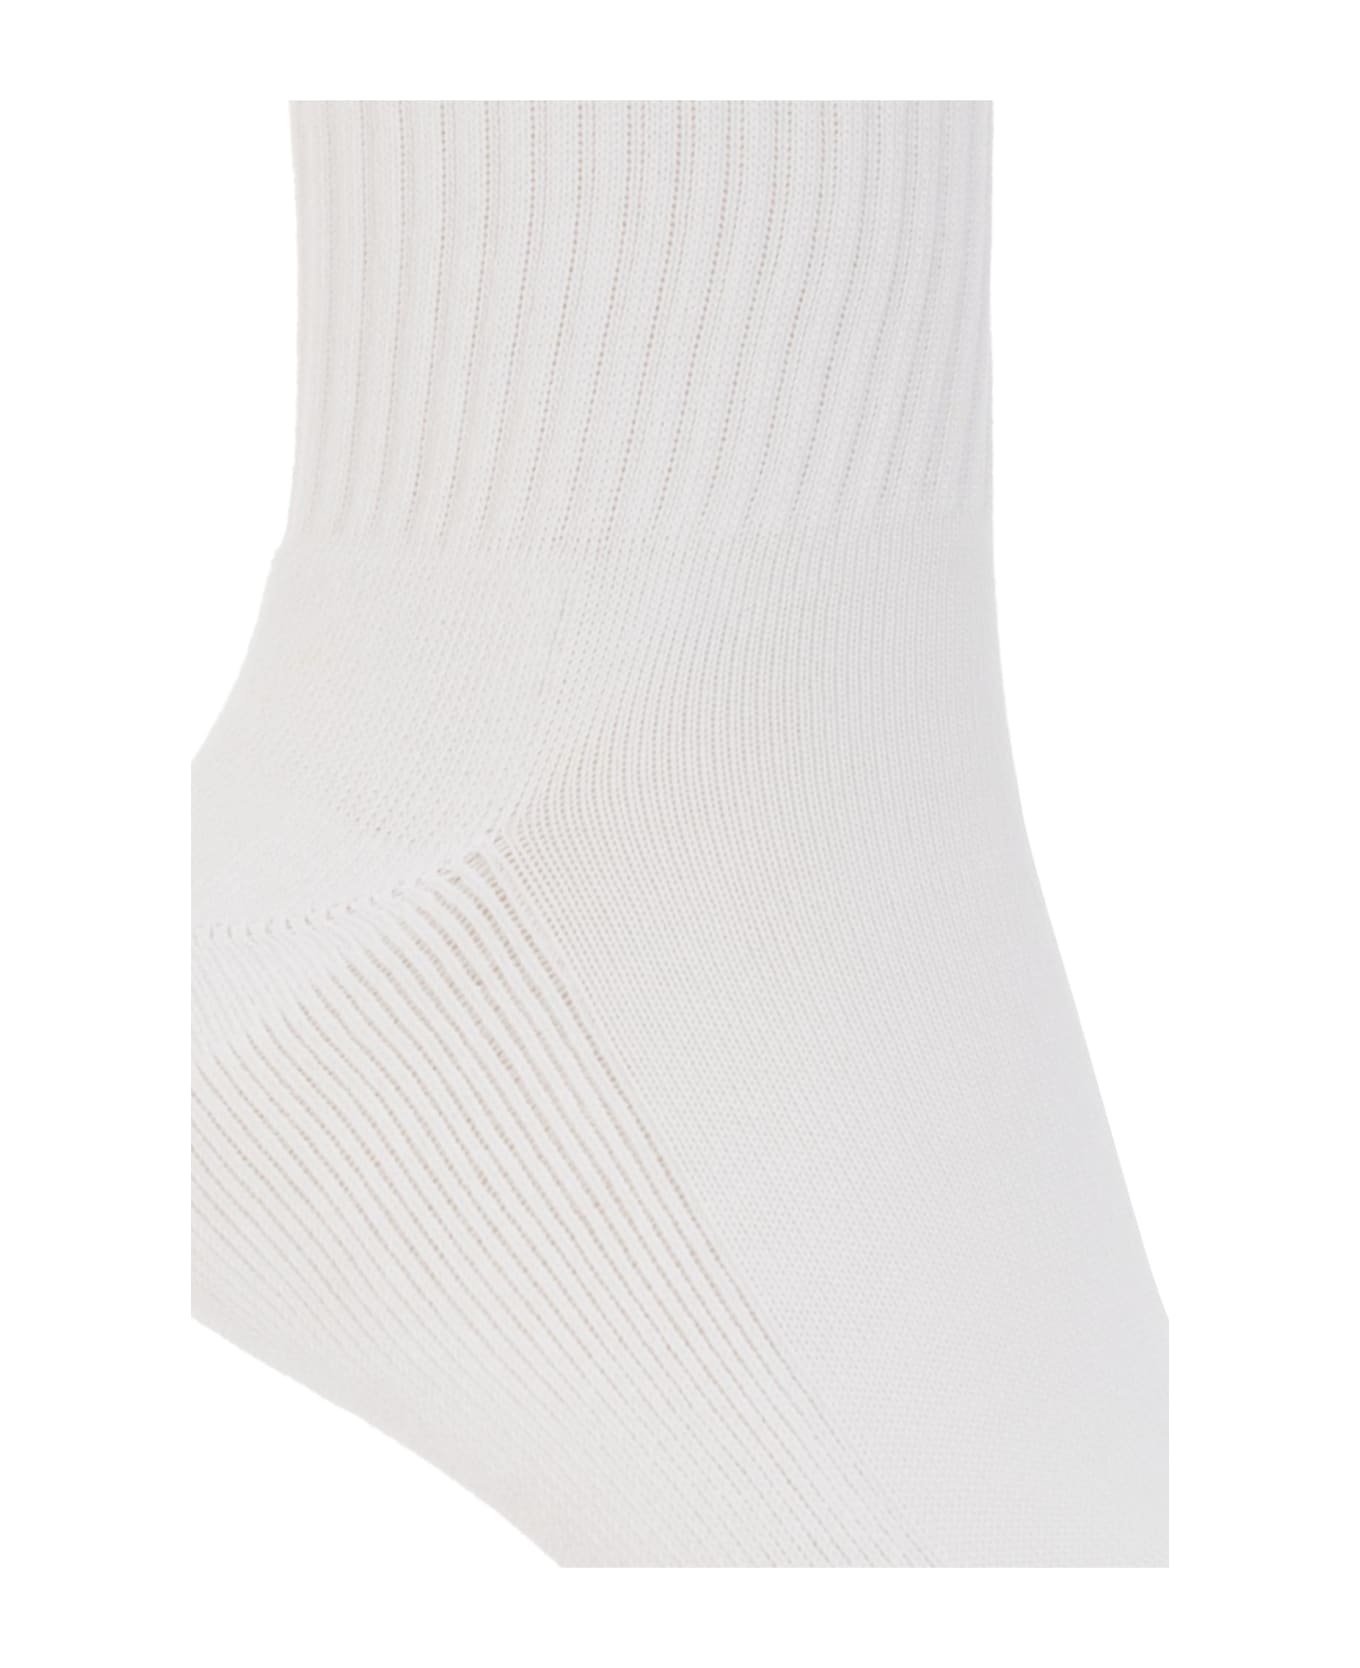 Branded Socks - 4